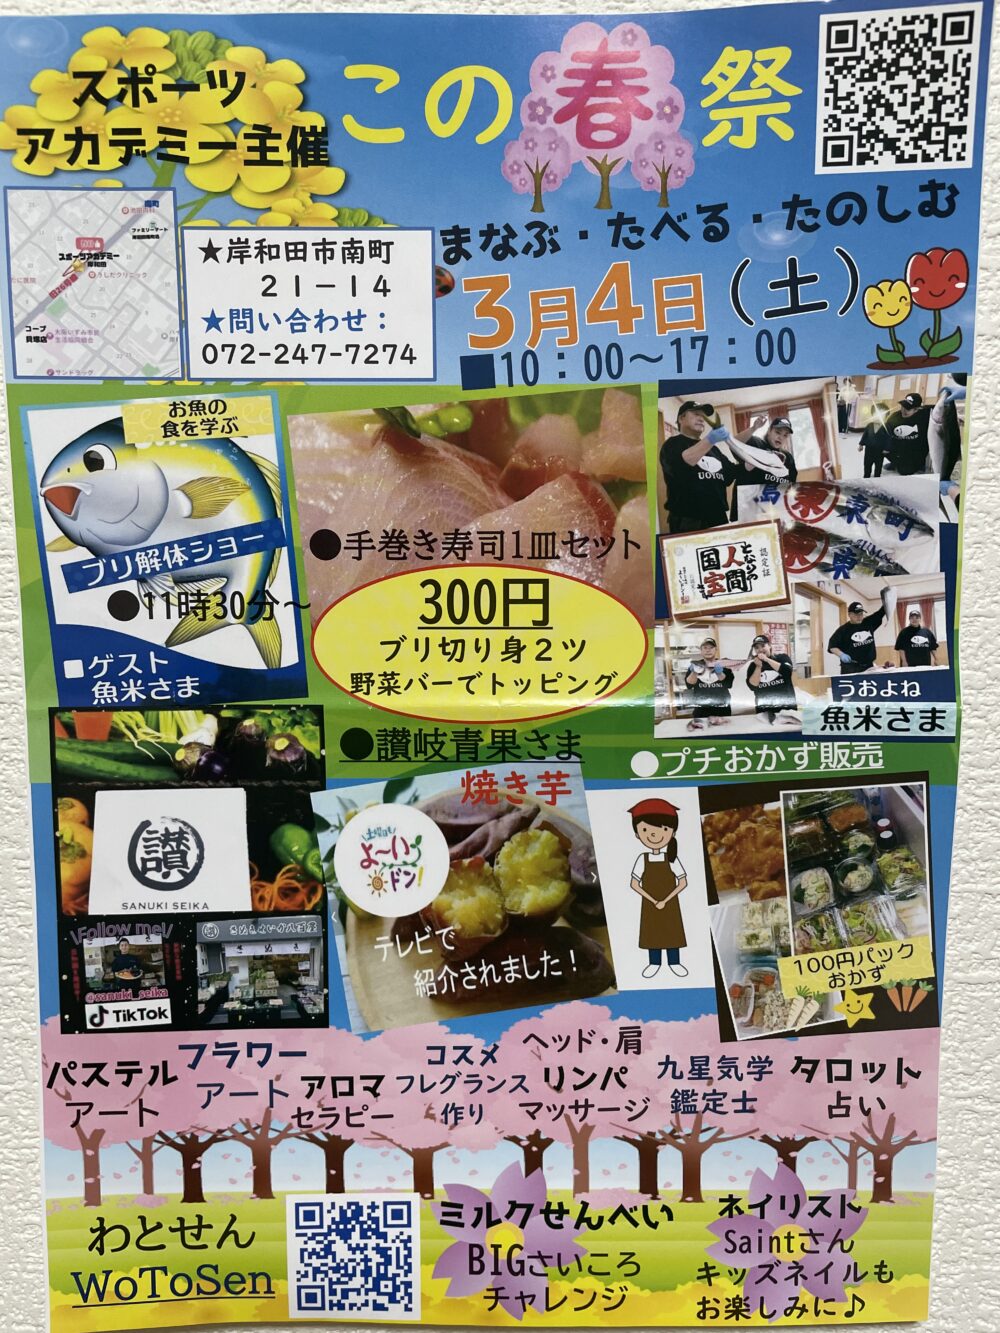 和食Cafe魚米のイベント情報